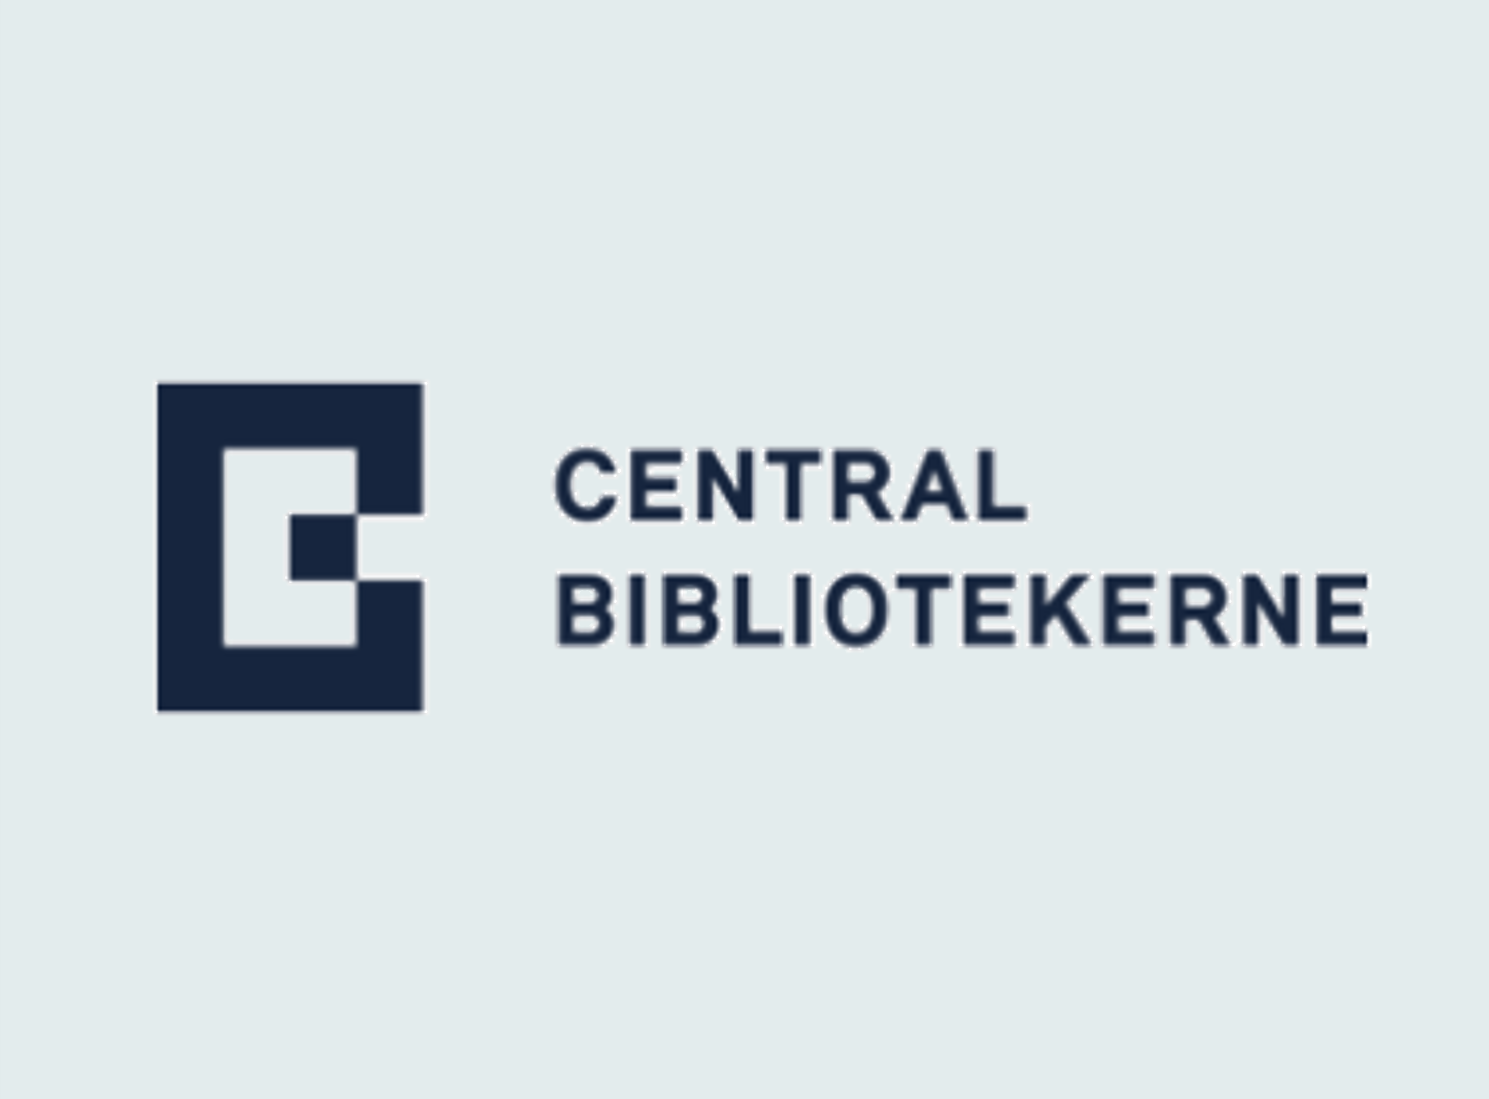 Central Bibliotekerne logo